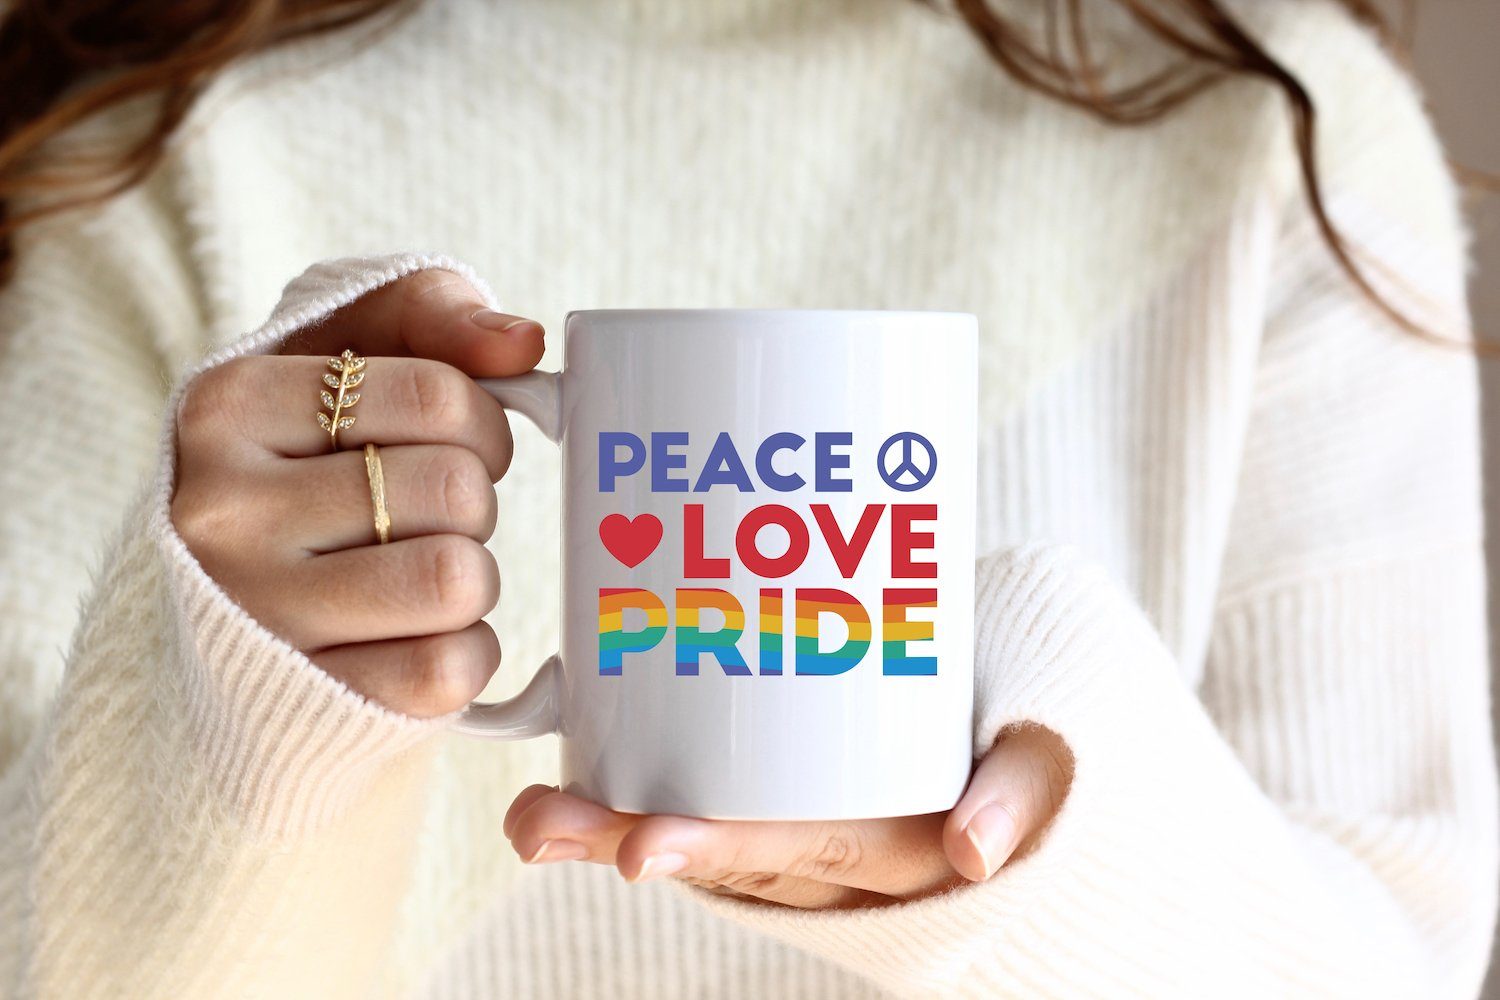 Kaffeetasse Weiss/Royal Youth mit Tasse Designz Keramik, Motiv Geschenk, Pride trendigem Love Peace